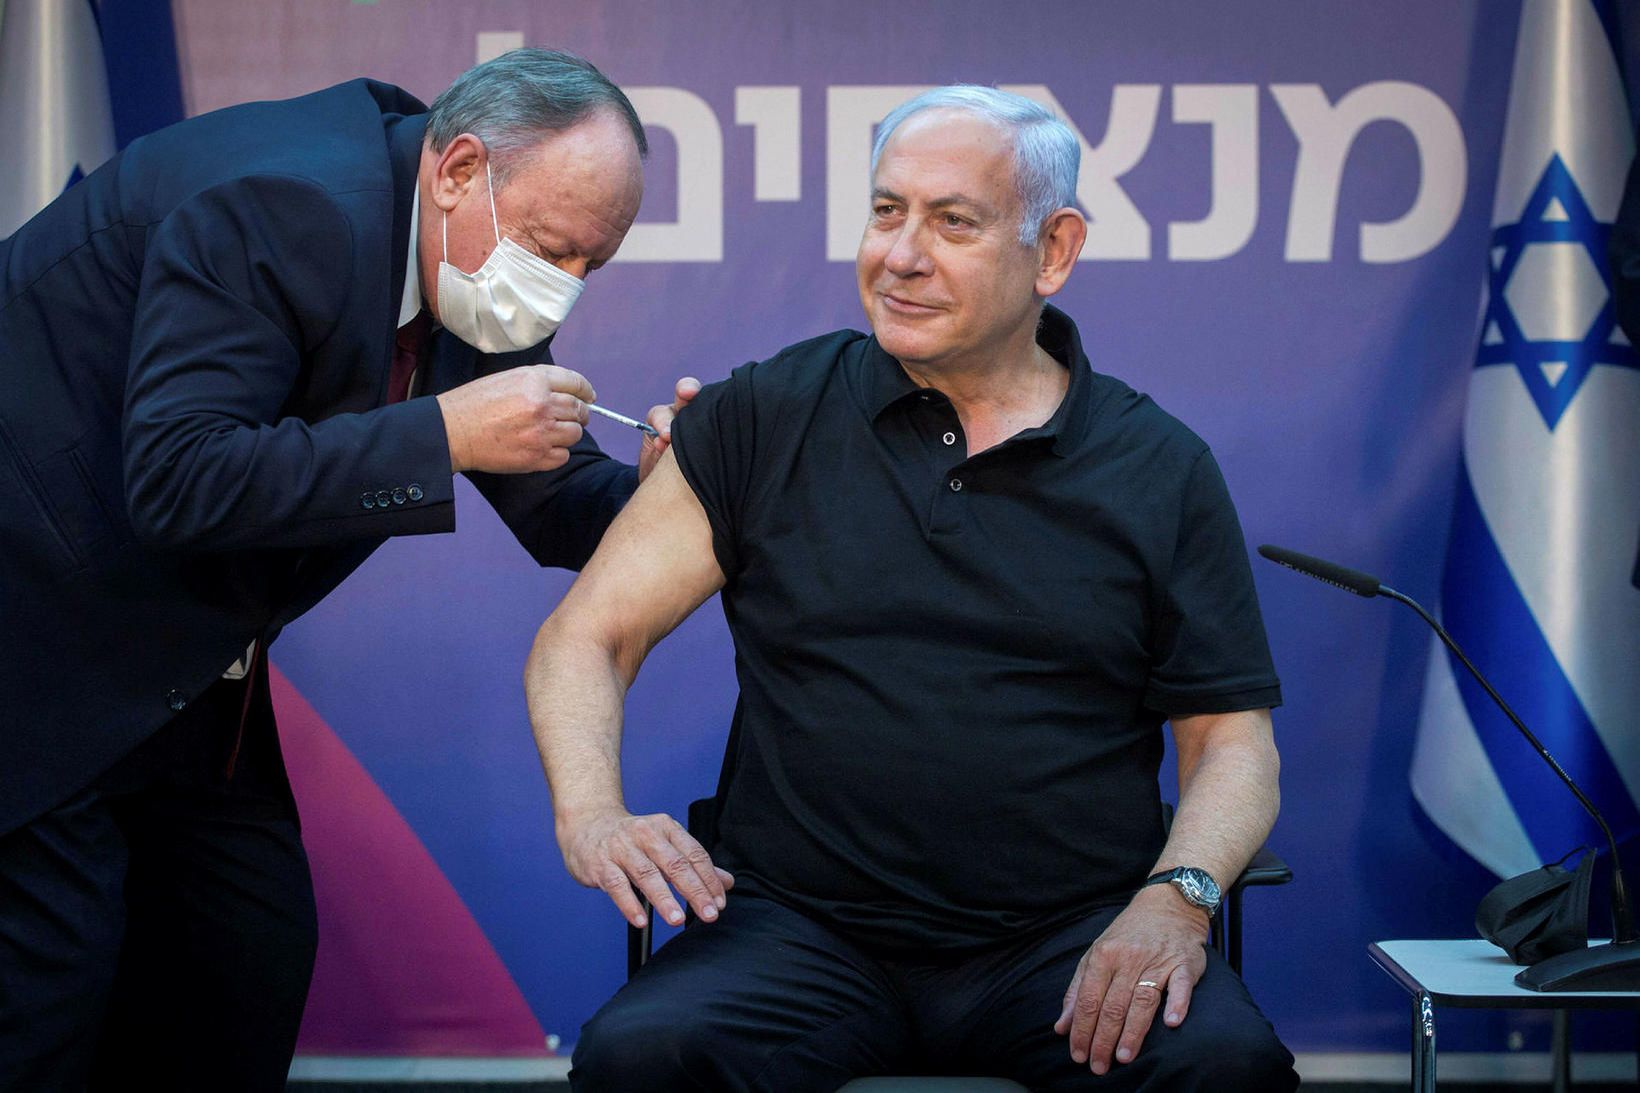 Benjamín Netanjahú fékk seinni sprautuna í gær.